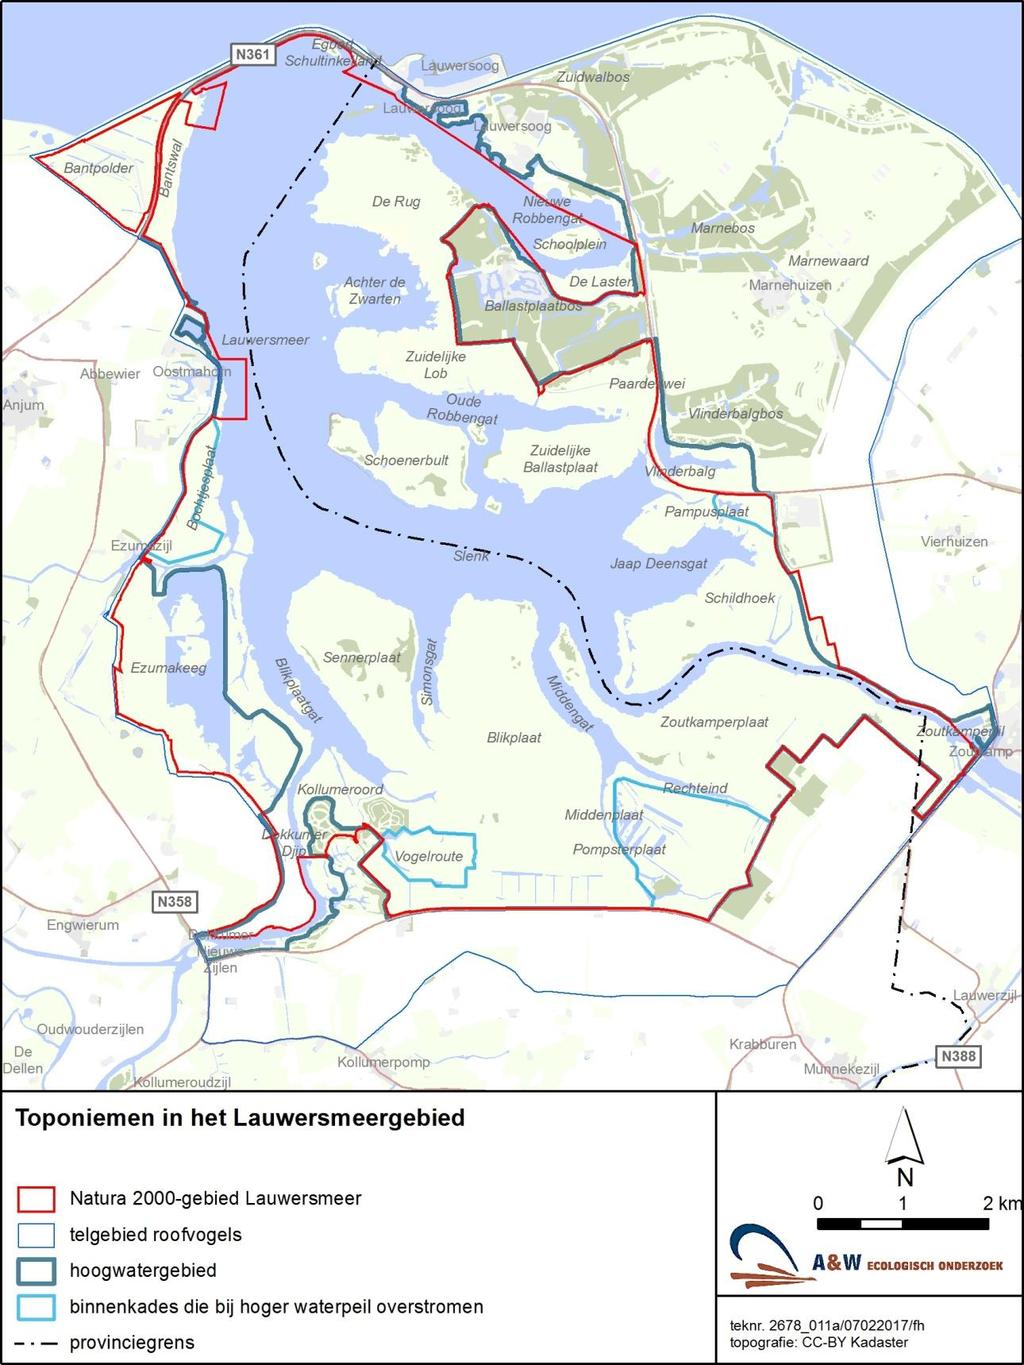 2 A&W-rapport 2288 Monitoring van effecten van bodemdaling op muizen en muizenetende roofvogels in het Lauwersmeer Figuur 1.